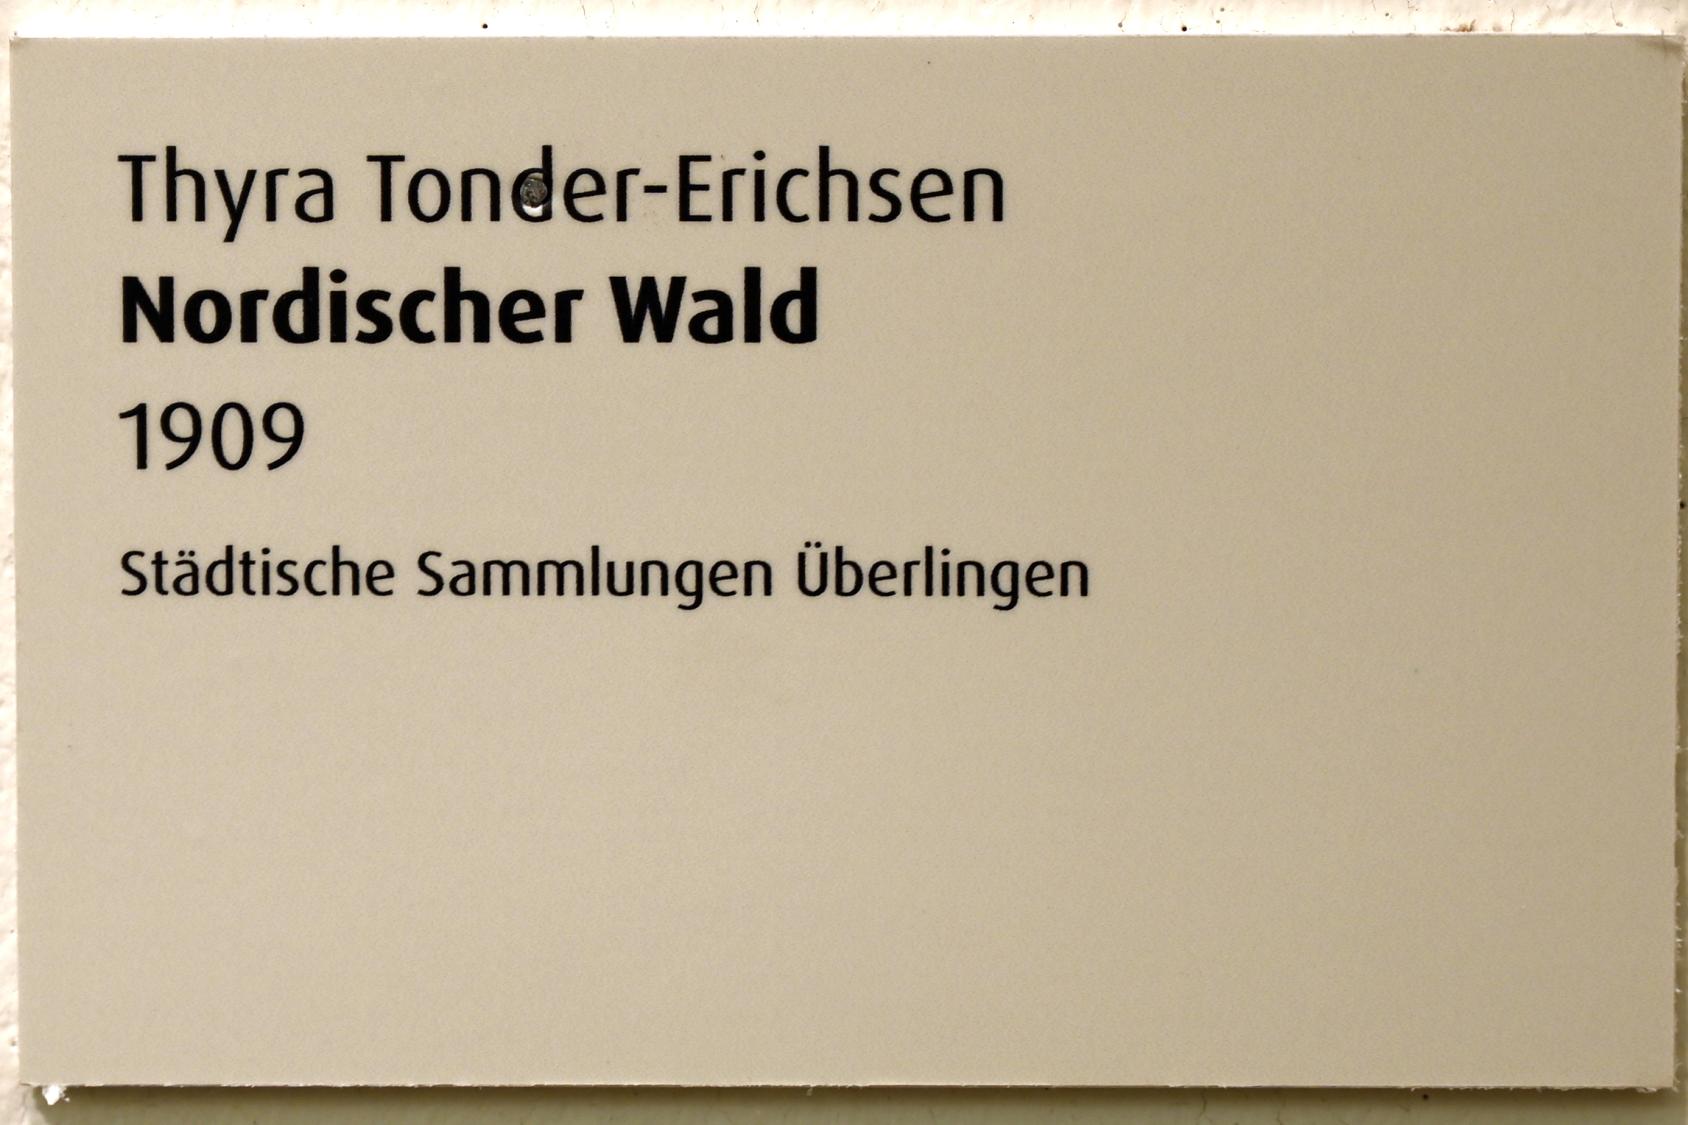 Thyra Tonder-Erichsen (1909), Nordischer Wald, Überlingen, Städtisches Museum, Wechselnde Sonderausstellungen, 1909, Bild 2/2